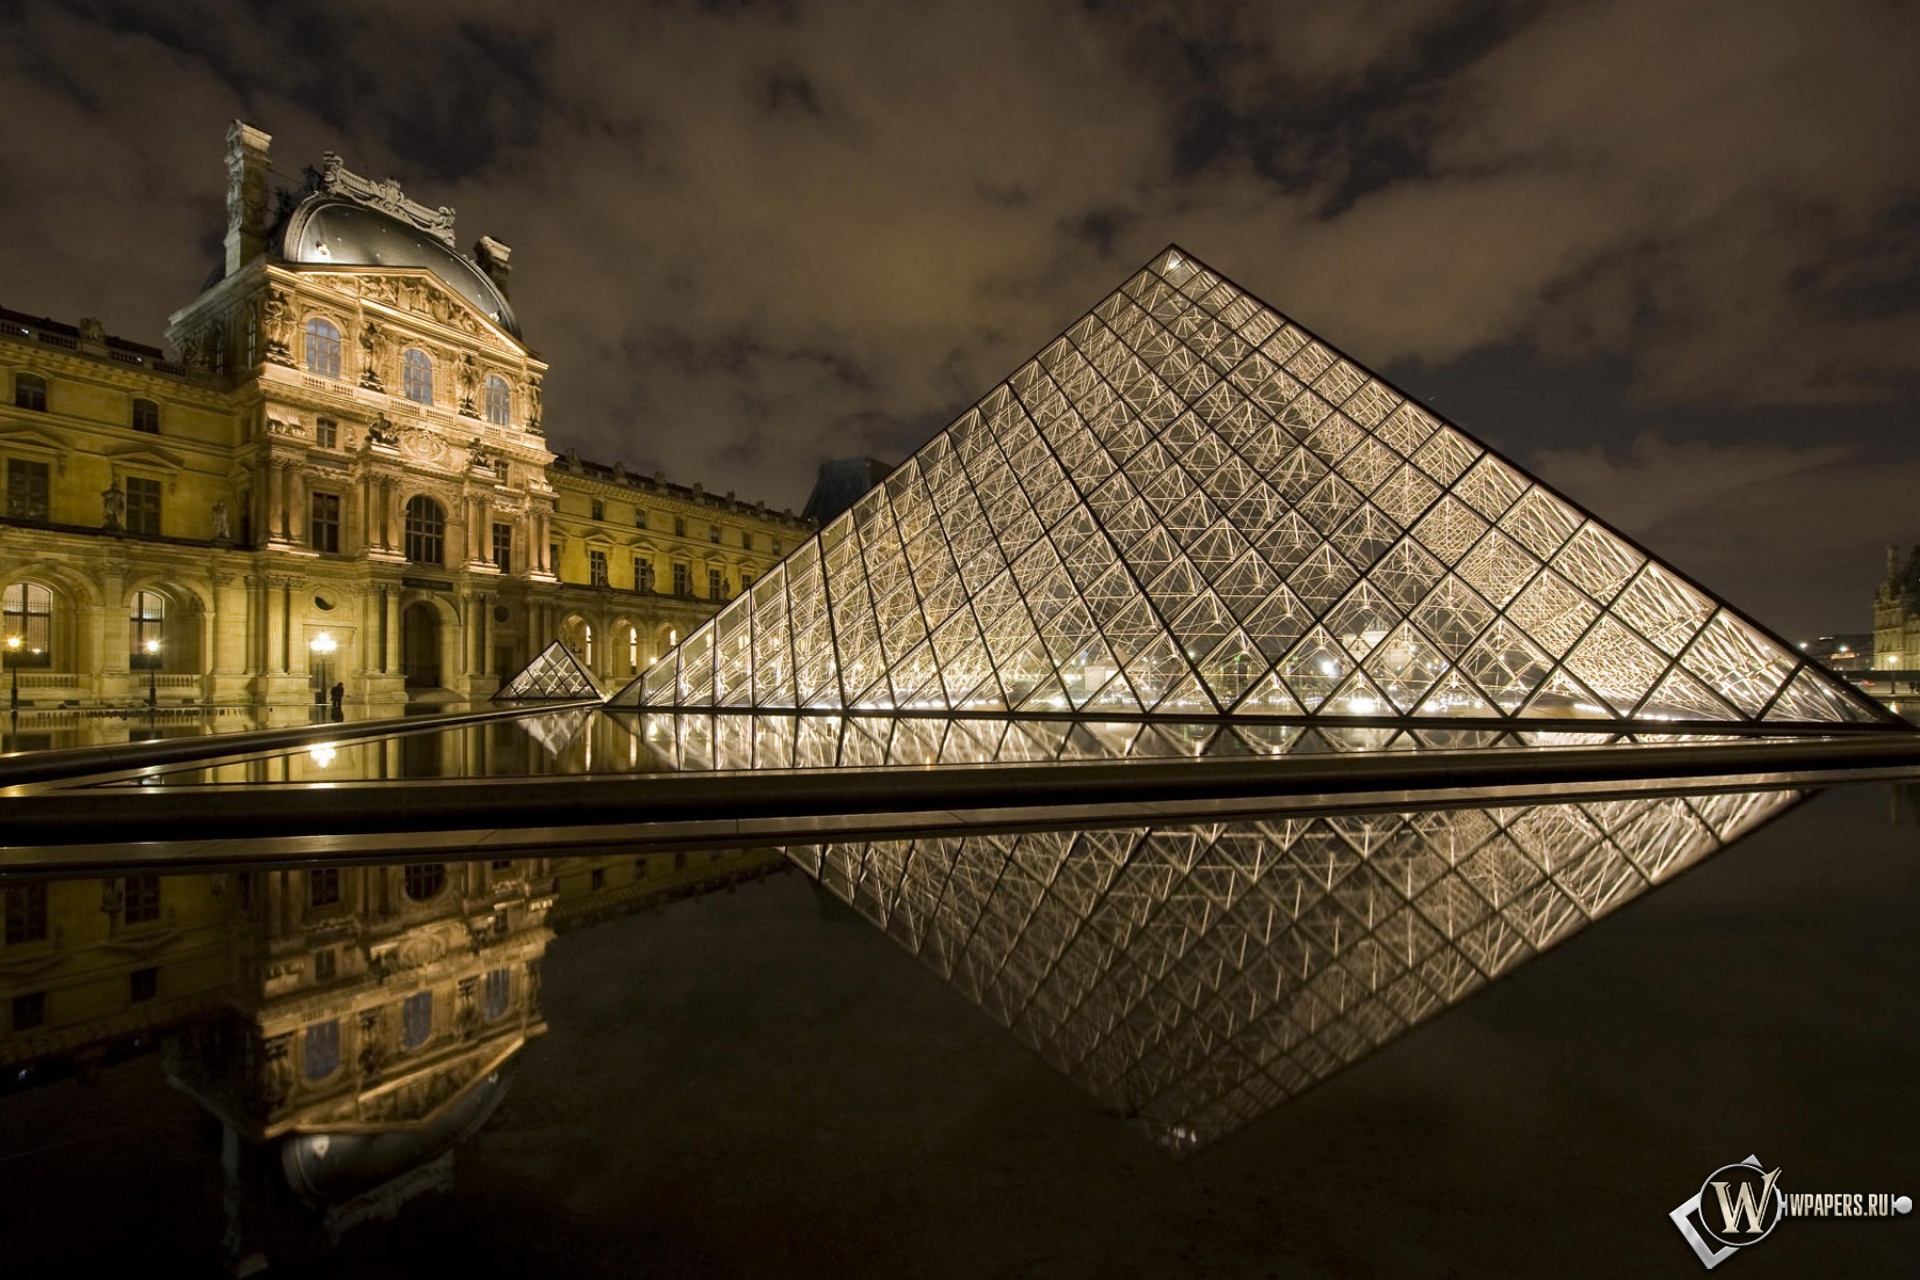 La louvre. Музеи. Лувр. Париж. Франция музей Лувр. Пирамида музей Лувр. Лувр музей Париж Архитектор.